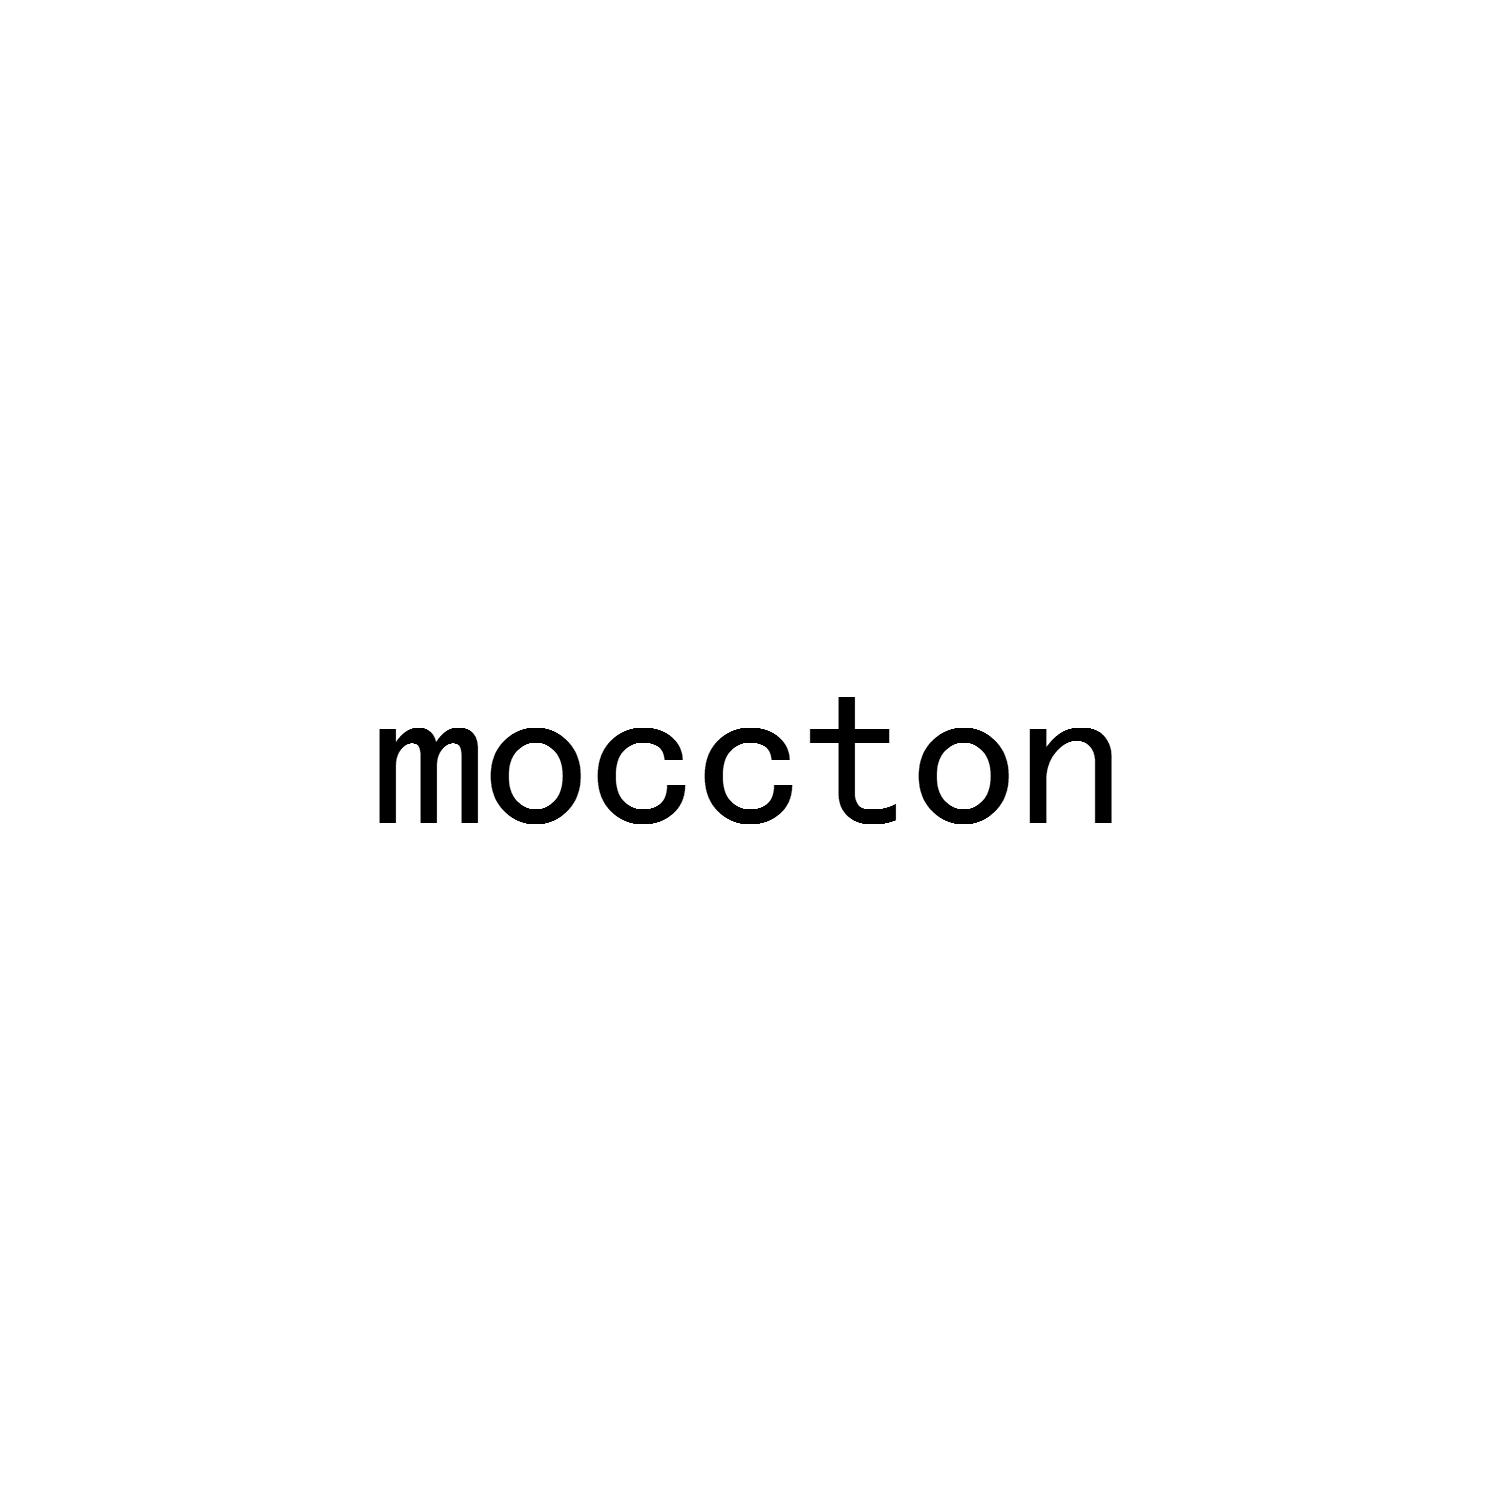 moccton